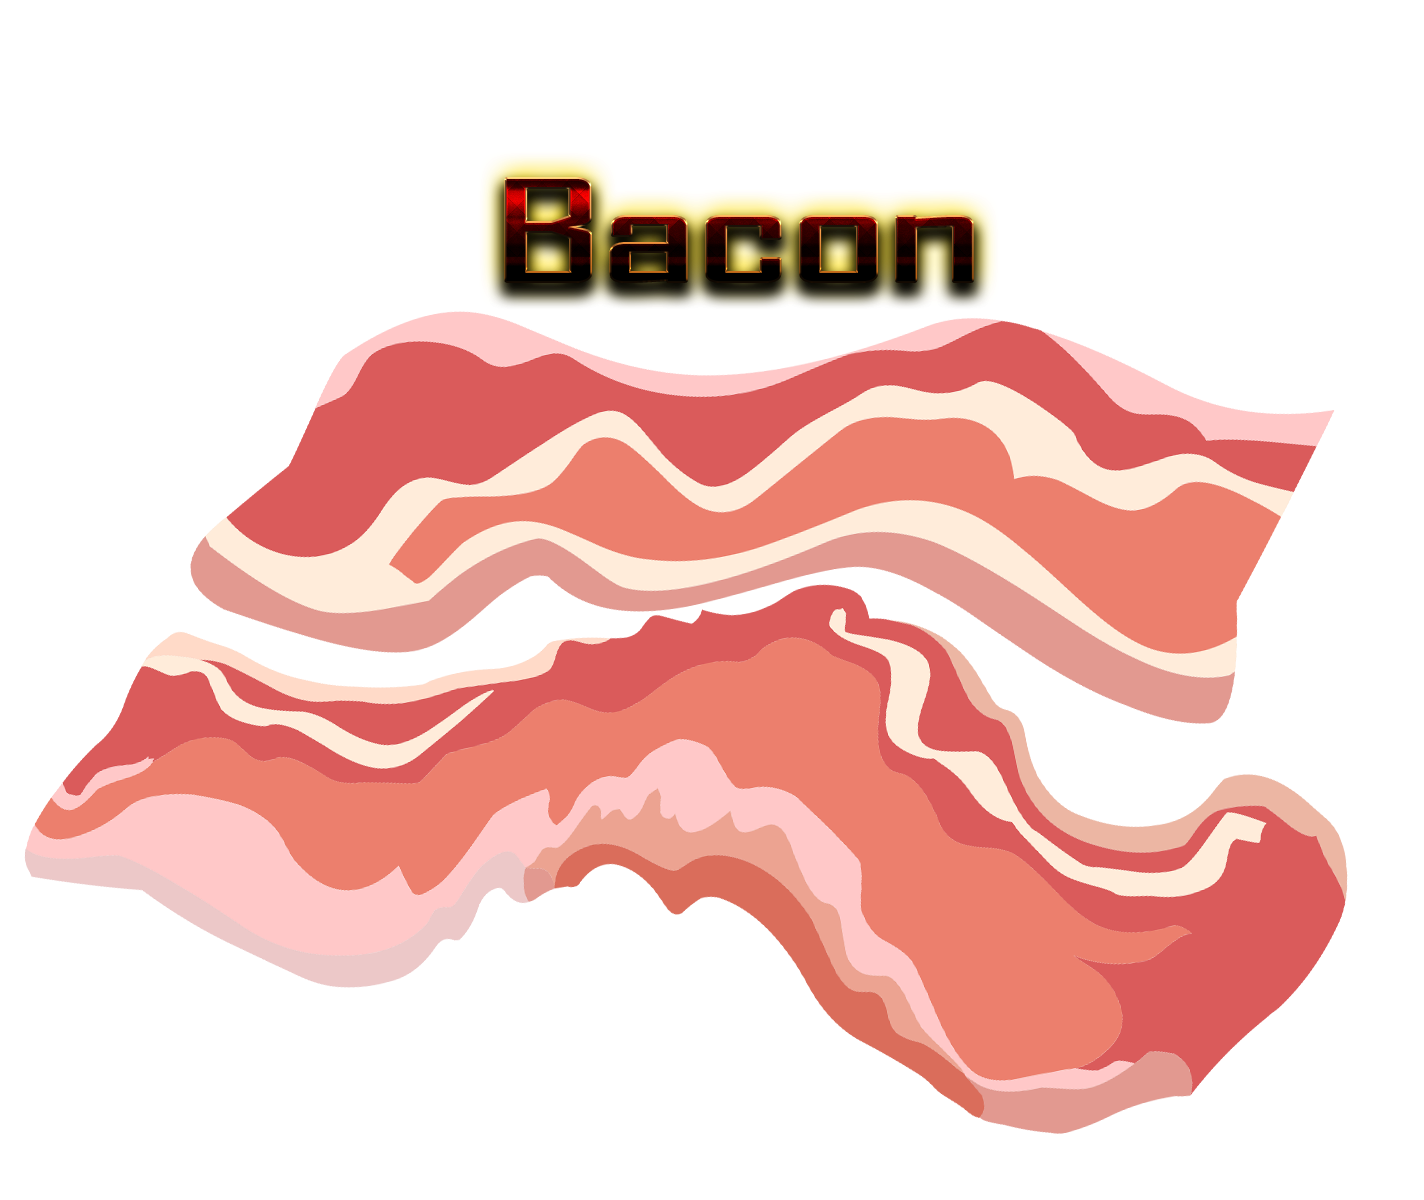 Bacon Clip art